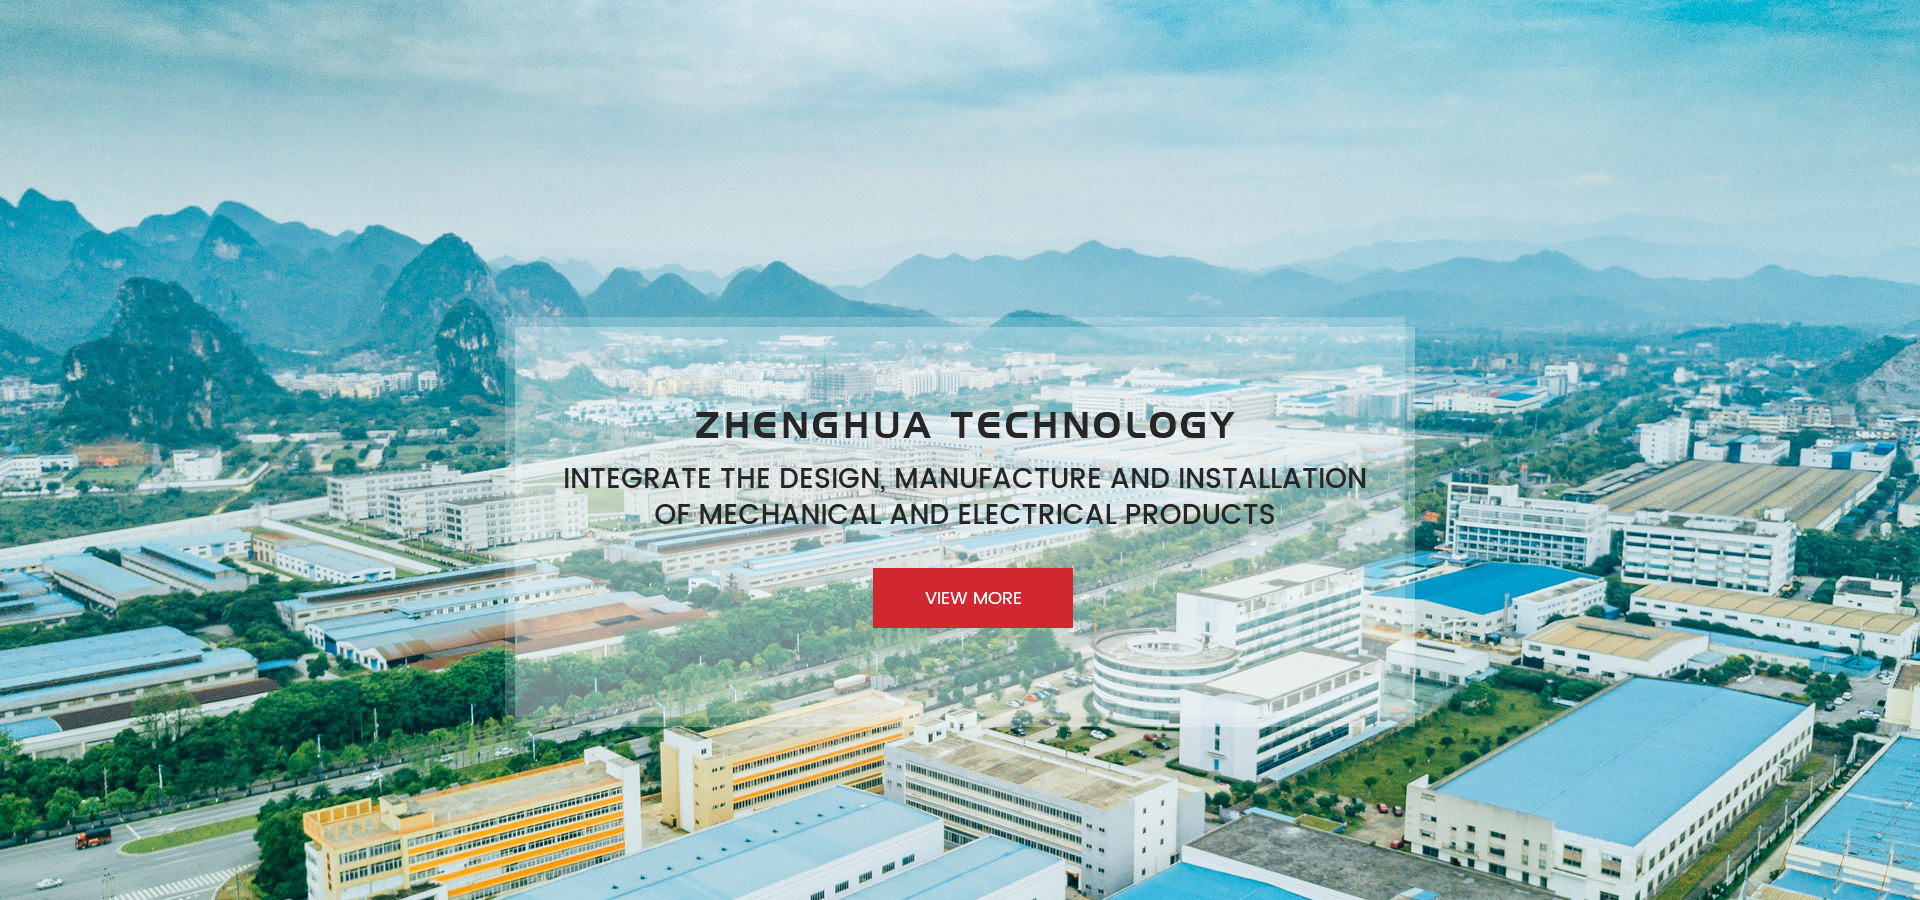 Jiangsu Zhenghua Electromechanical Technology Co., Ltd.